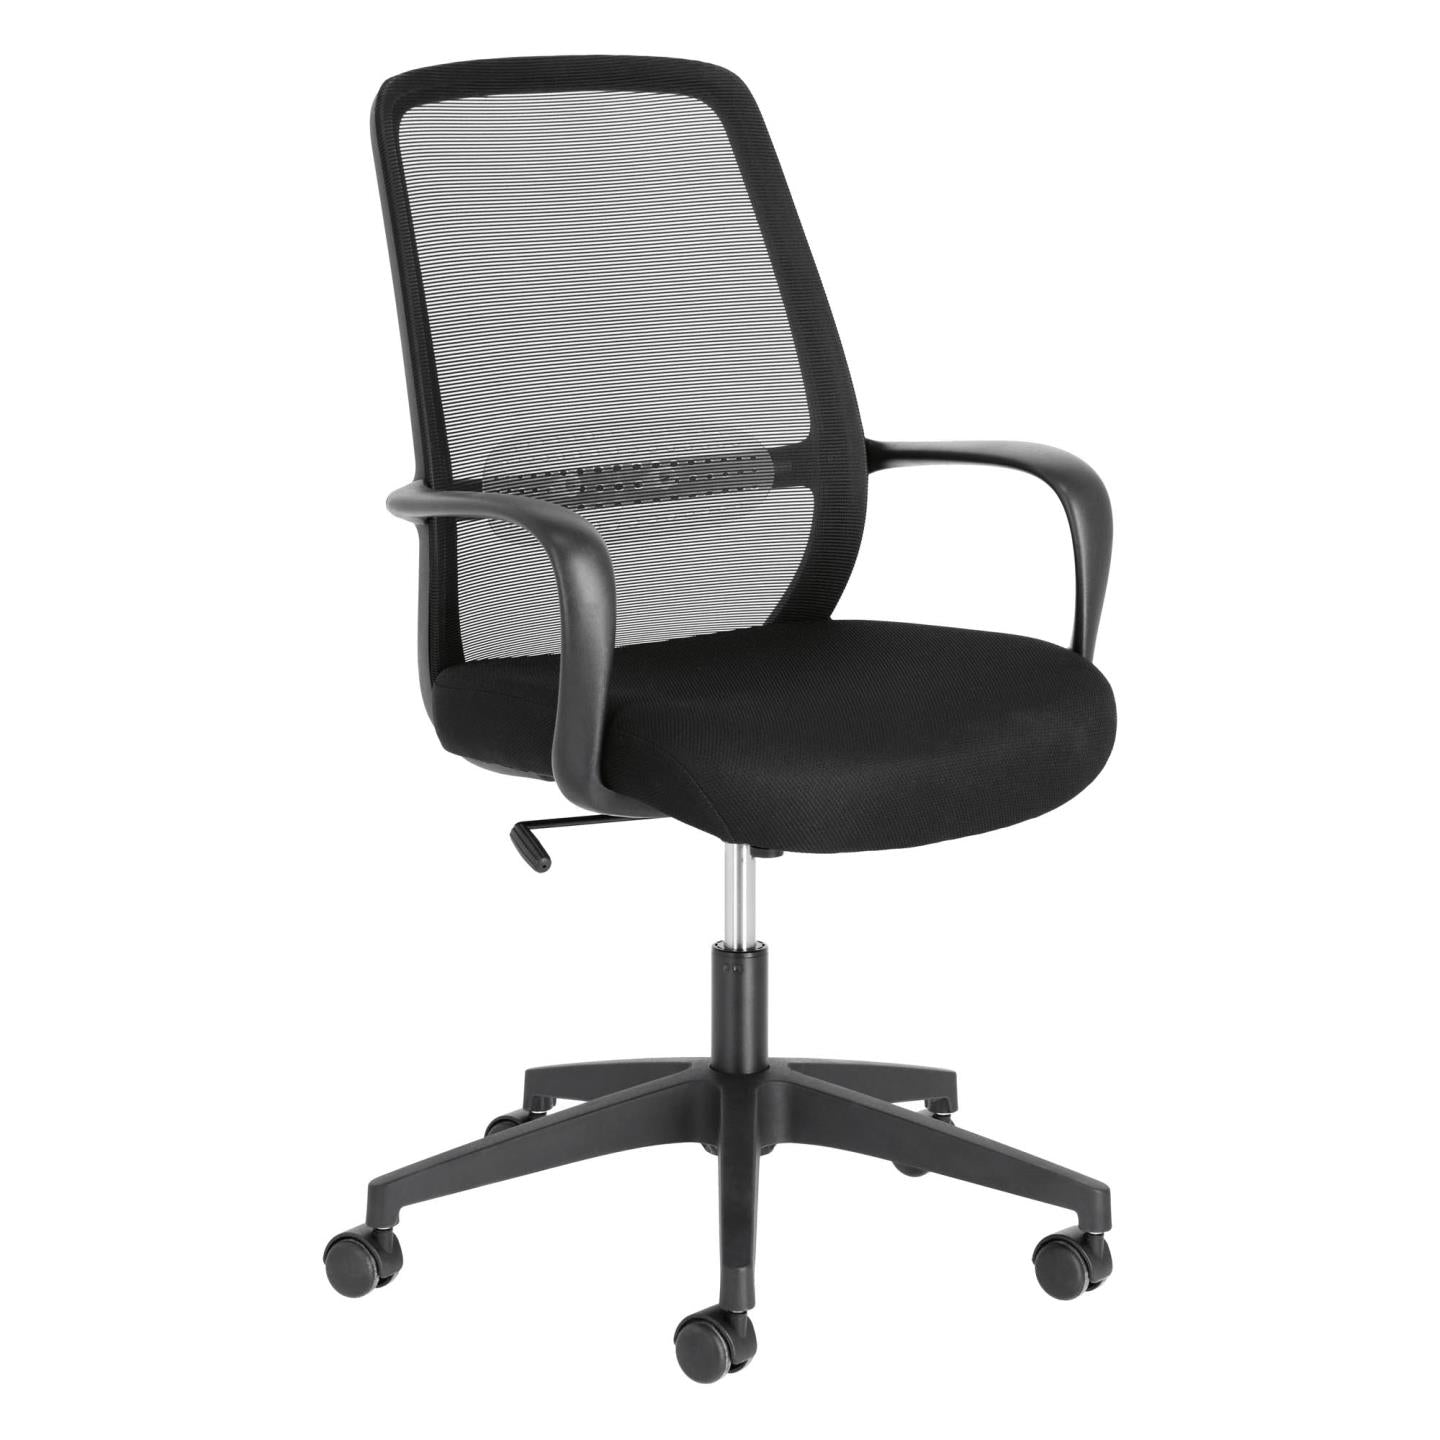 Melva irodai szék fekete színben